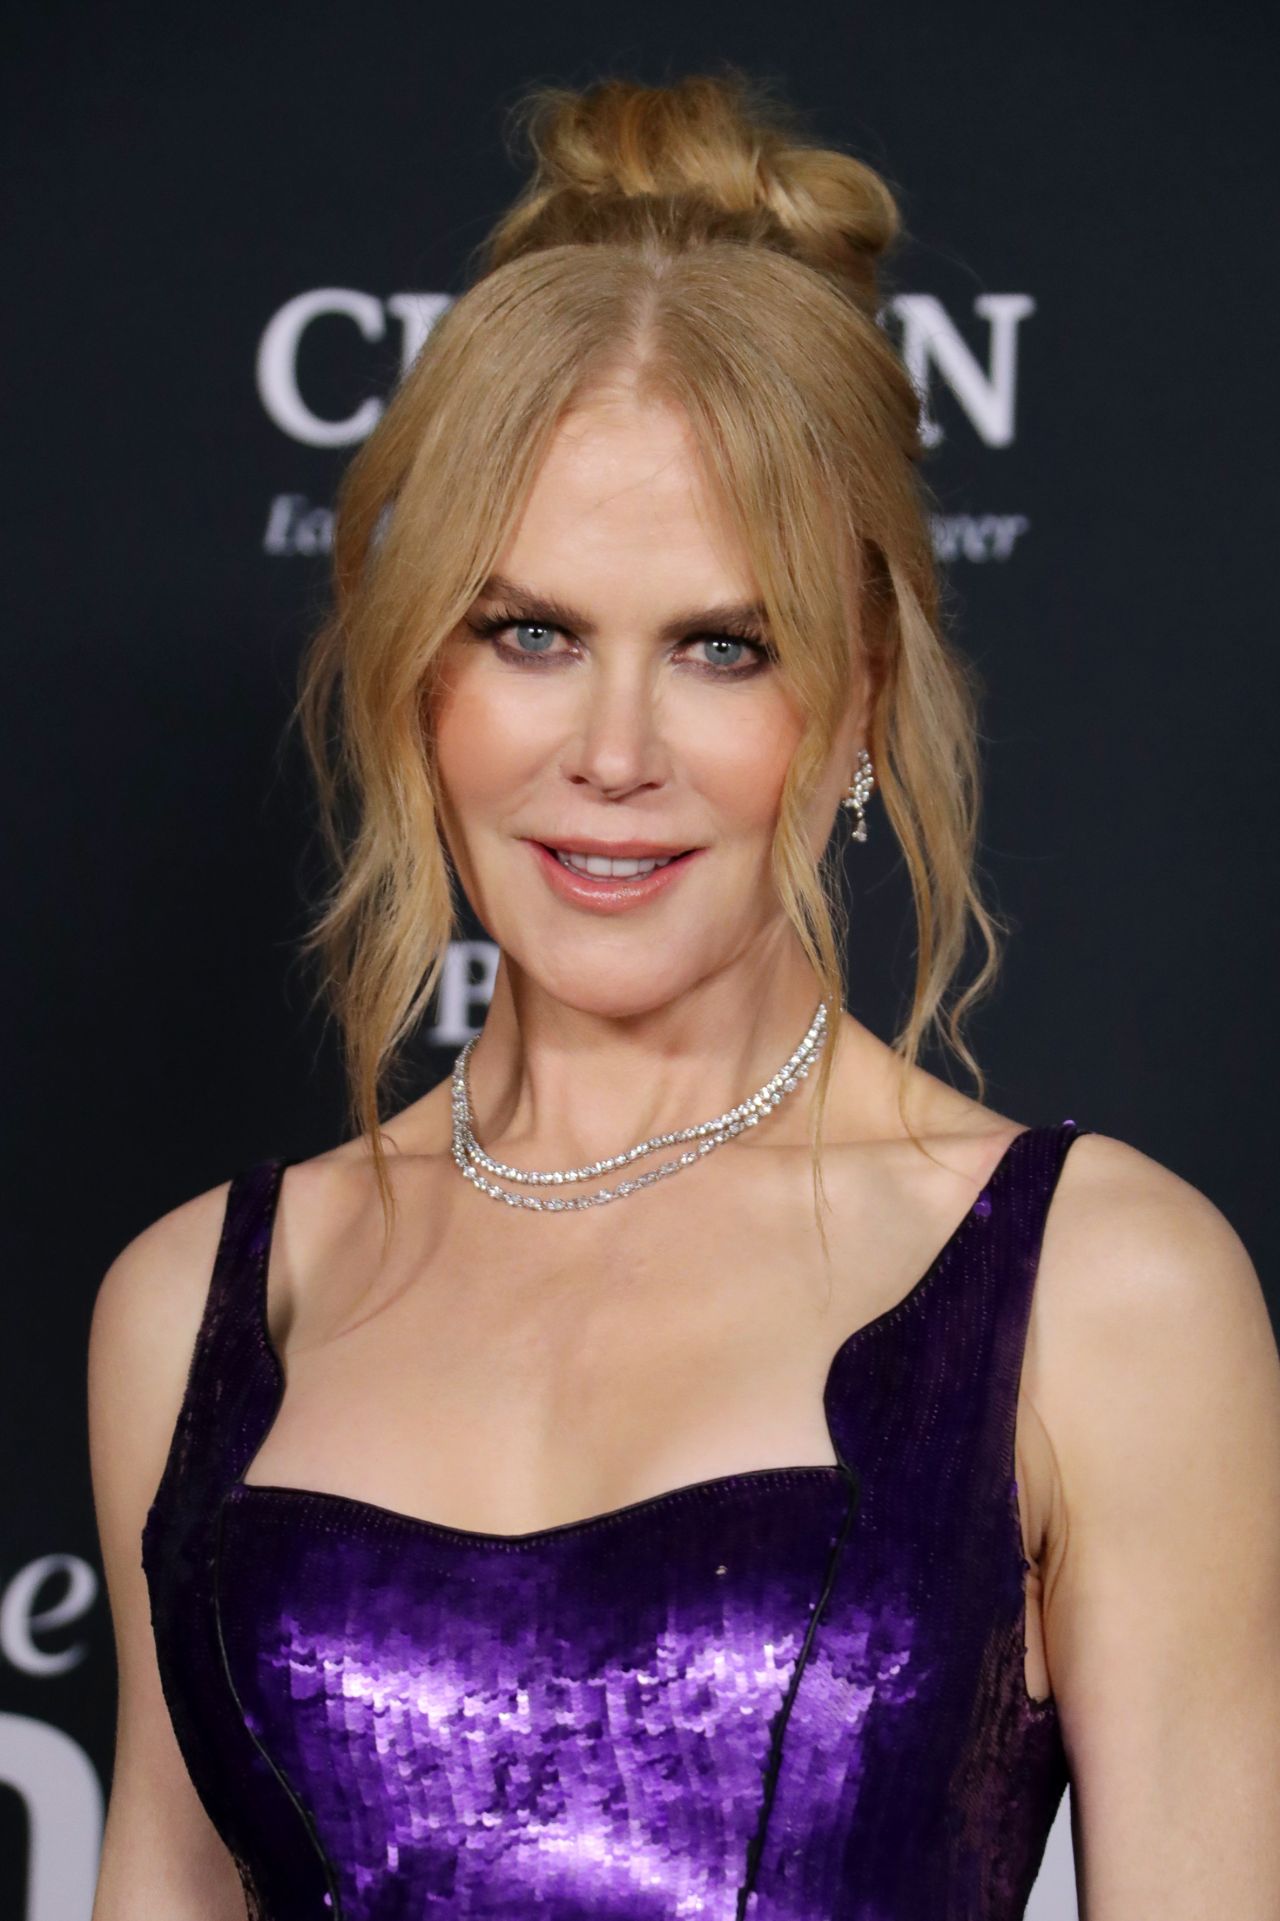 Nicole Kidman 2021 Images Nicole Kidman Surprises Fan - vrogue.co